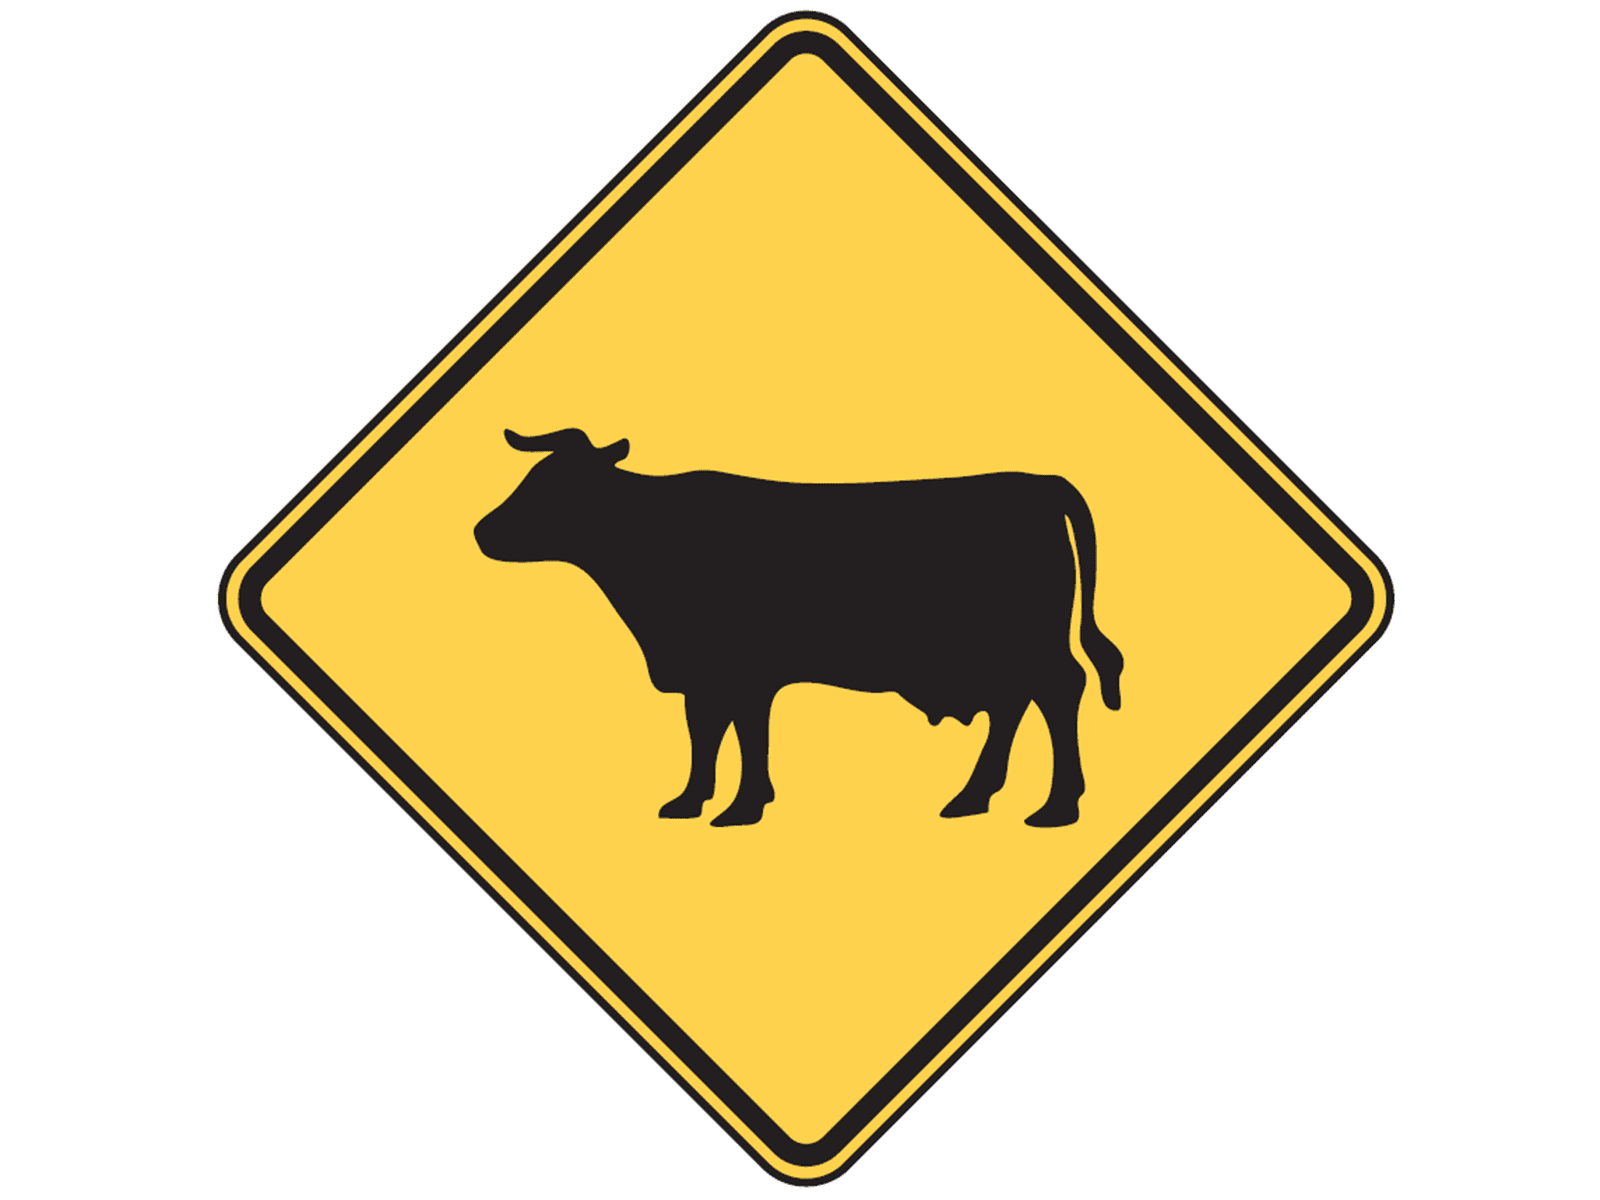 Cattle W11-4 - W11: Animals